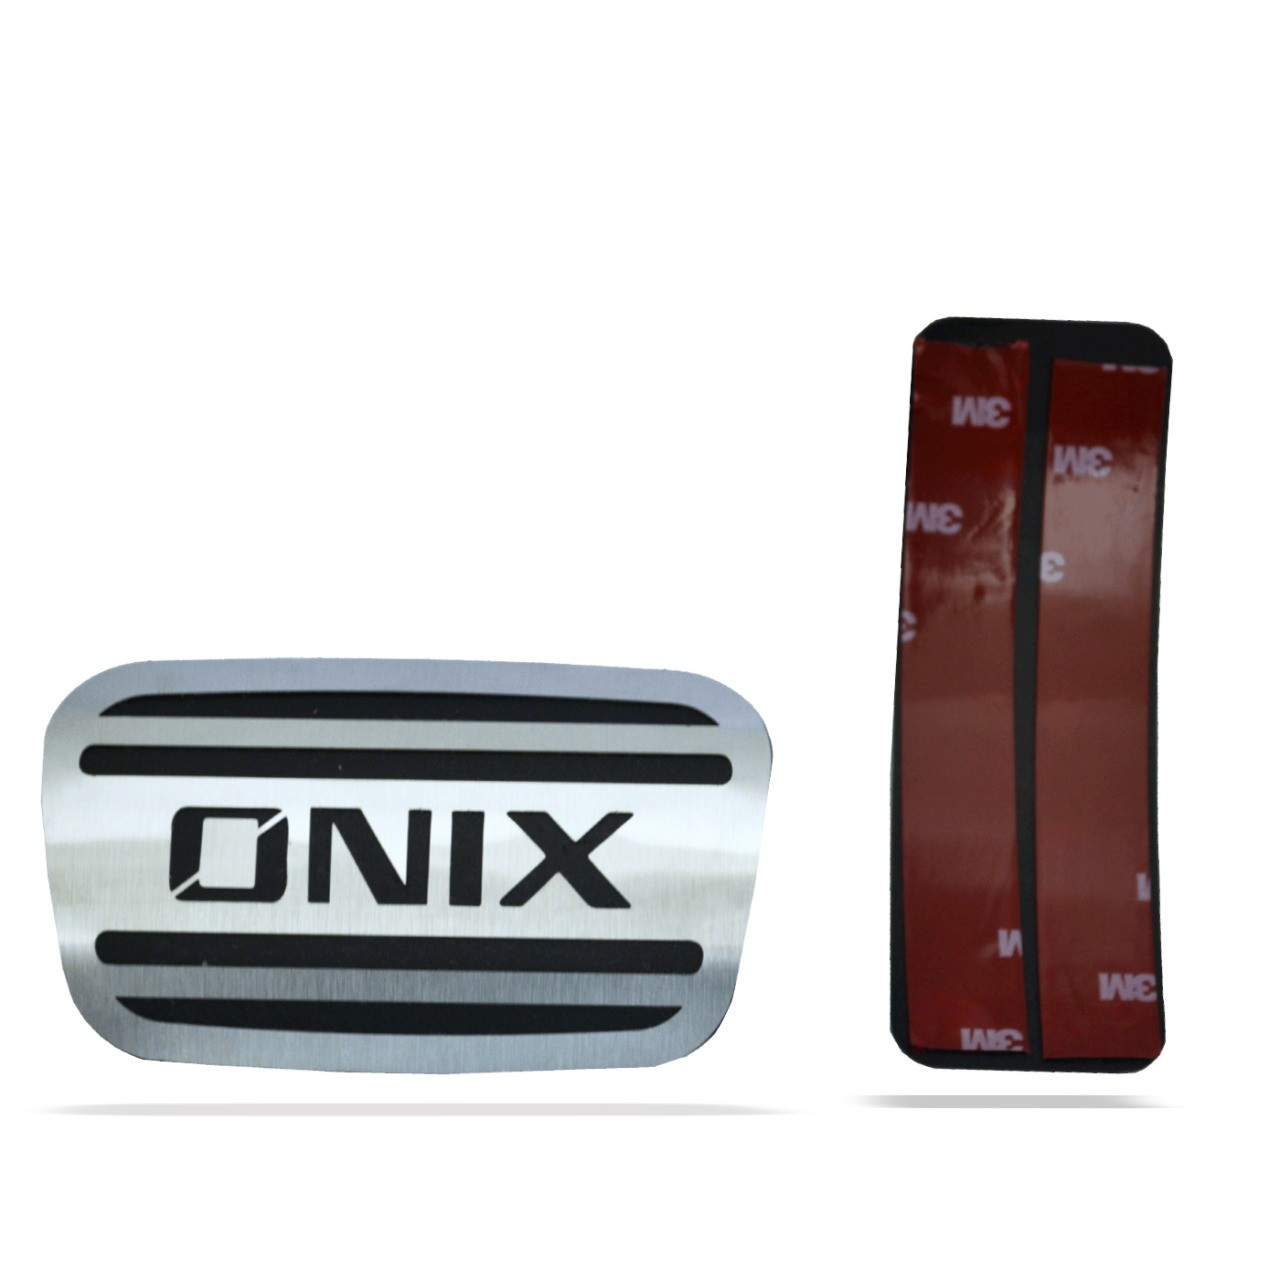 Pedaleira para Onix Automático em Aço Inox